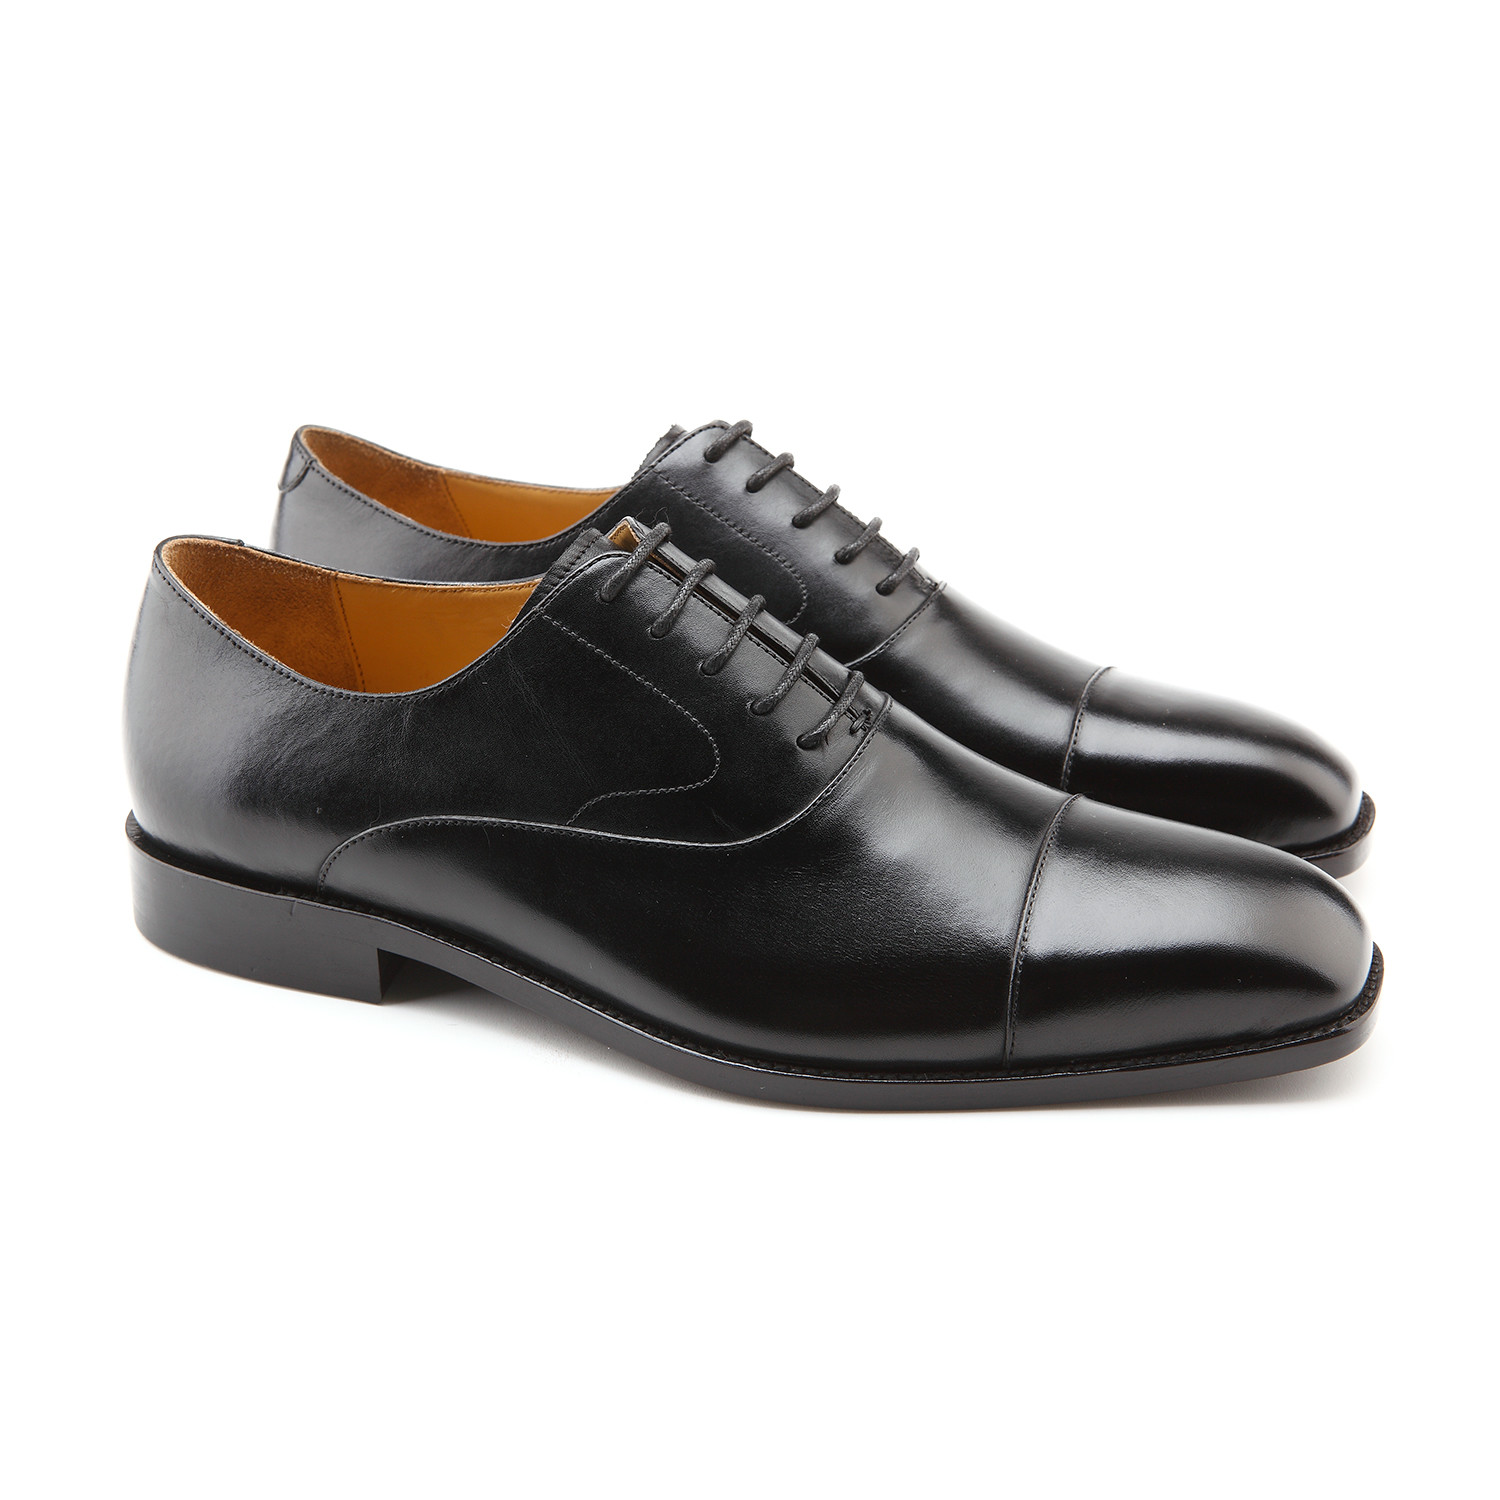 Richard Classic Cap-Toe Oxford // Black (US: 8.5) - Monsieur Shoes ...